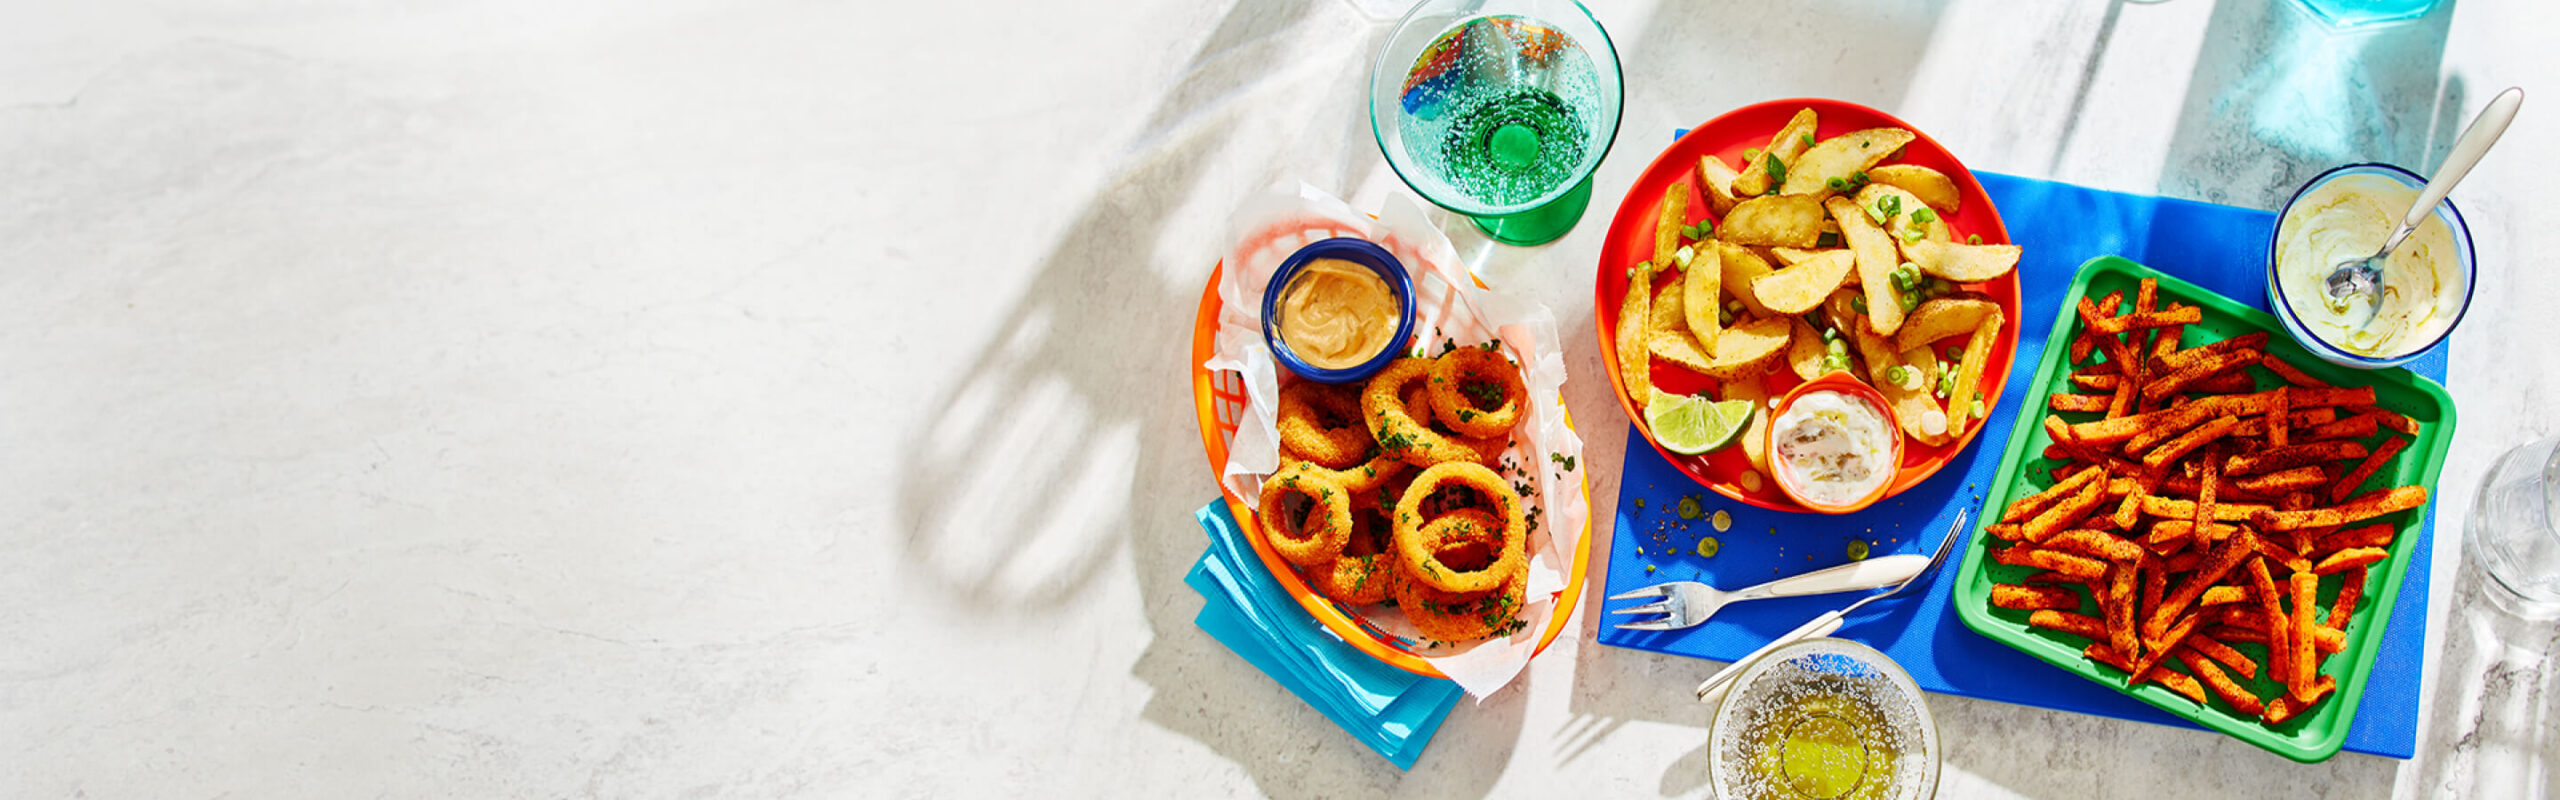 Frites de patates douces, frites d'inspiration mexicaine et rondelles d'oignon sur fond blanc